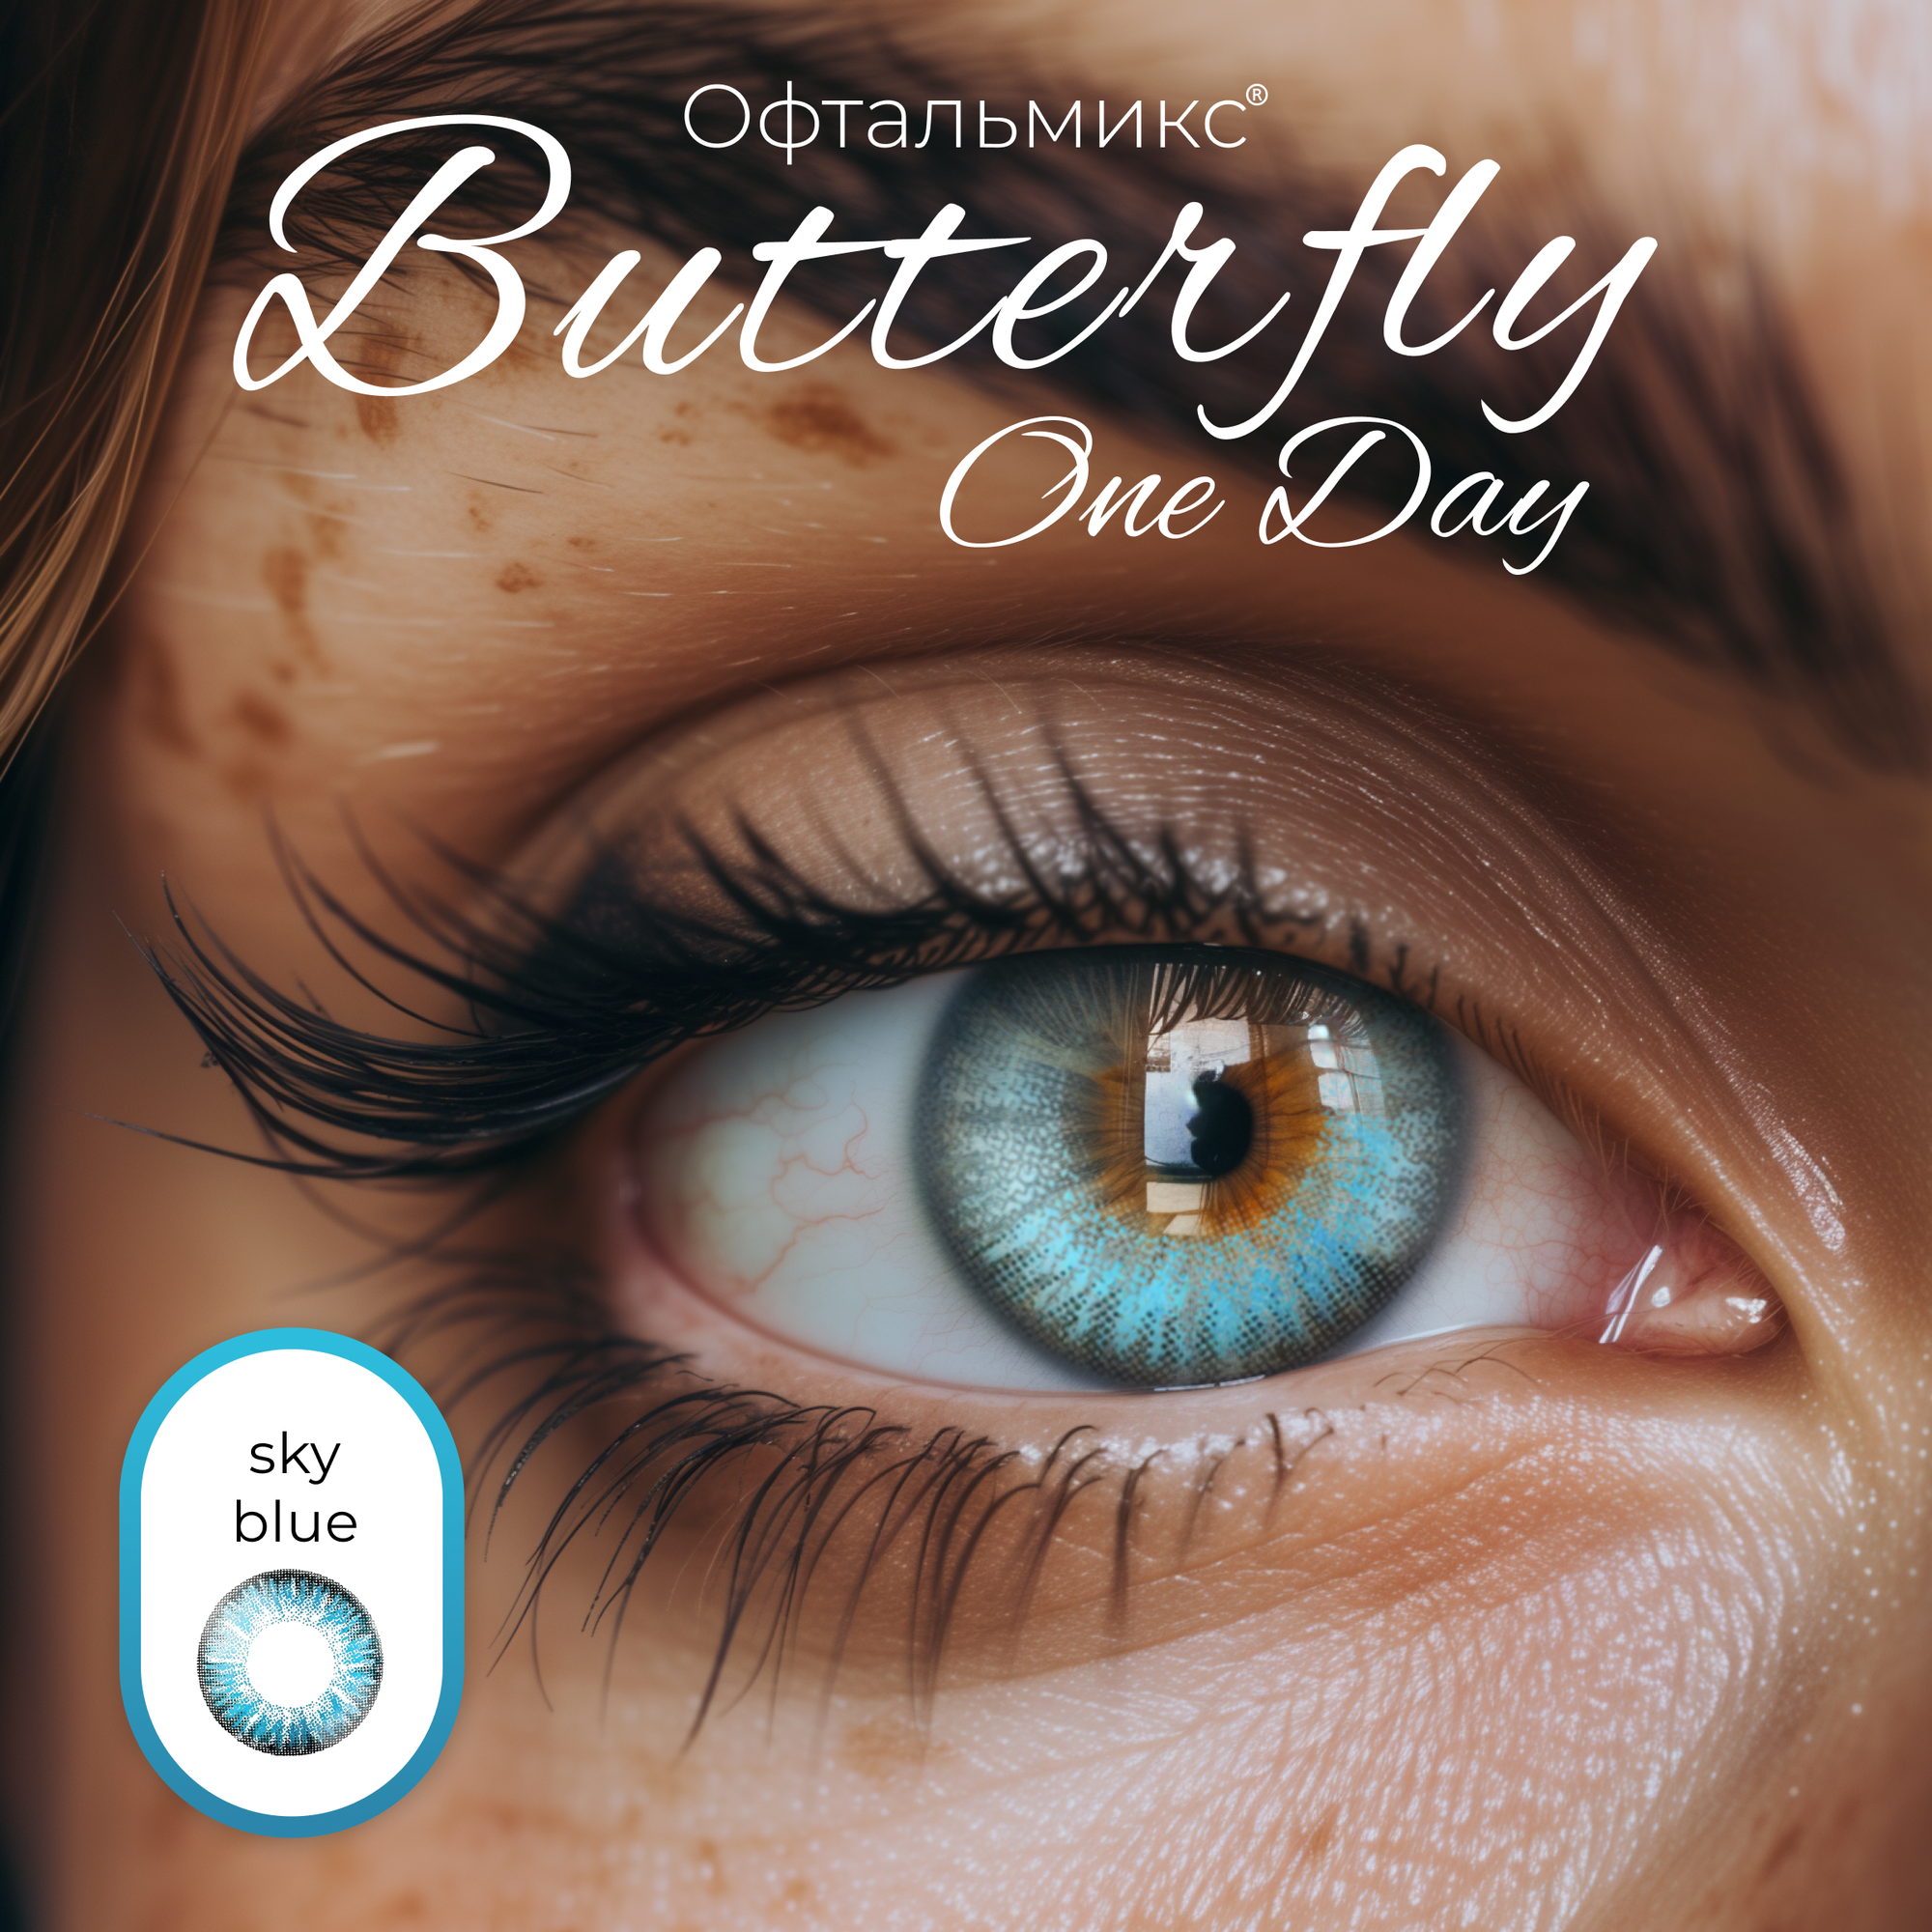 Цветные контактные линзы Офтальмикс Butterfly One Day (2 линзы) -7.50 R 8.6 Sky Blue (Голубой)